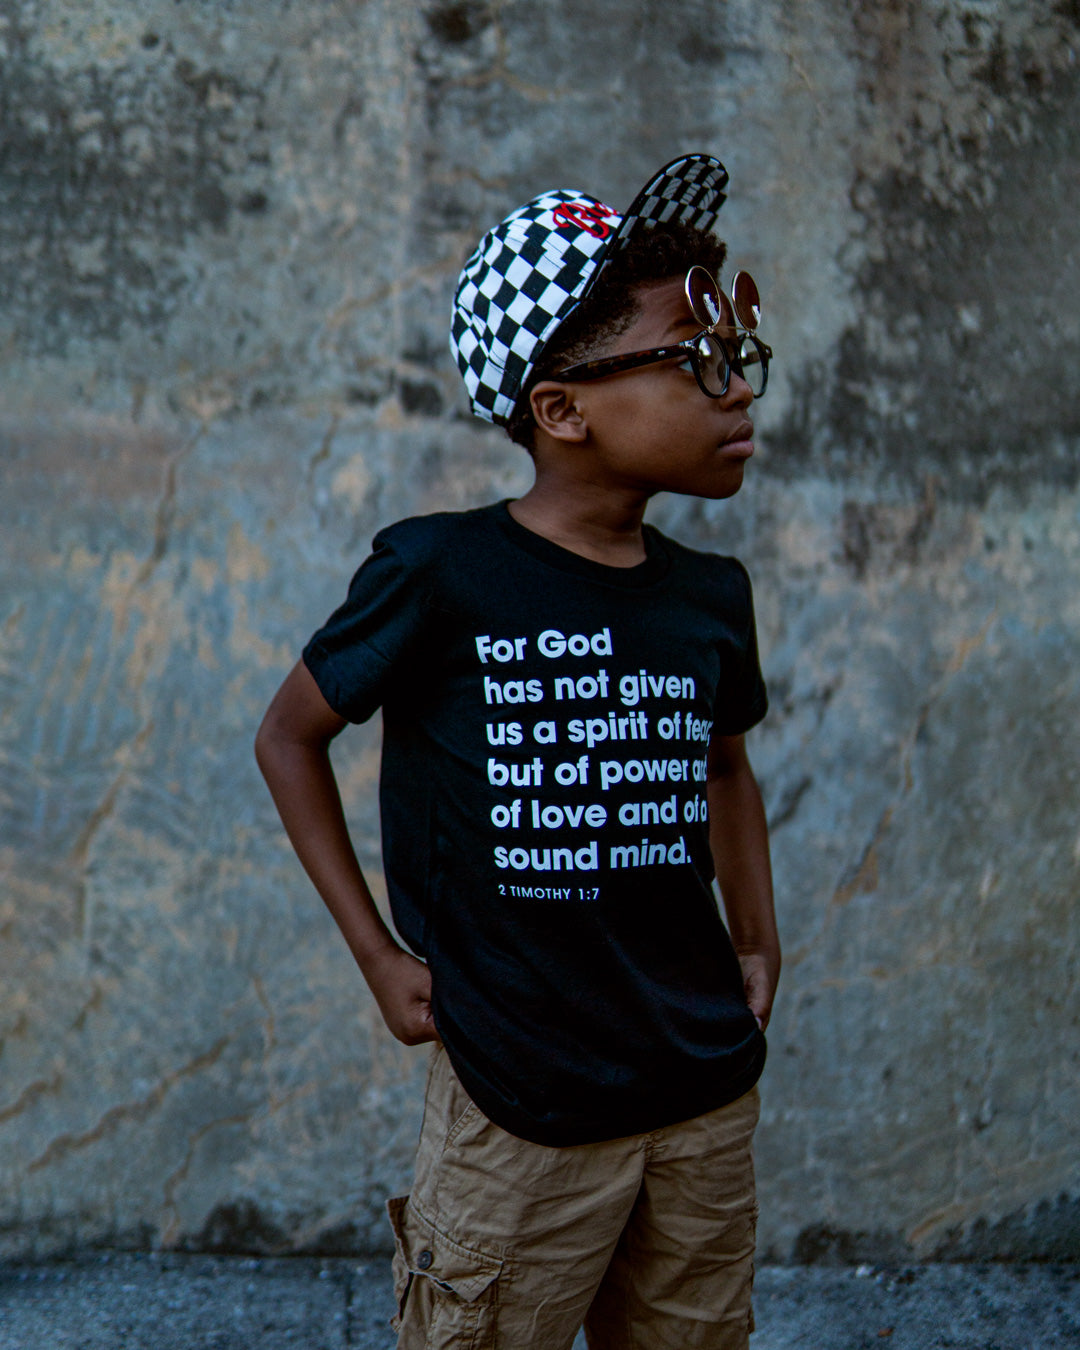 2 Timothy 1:7 Kids T-shirt